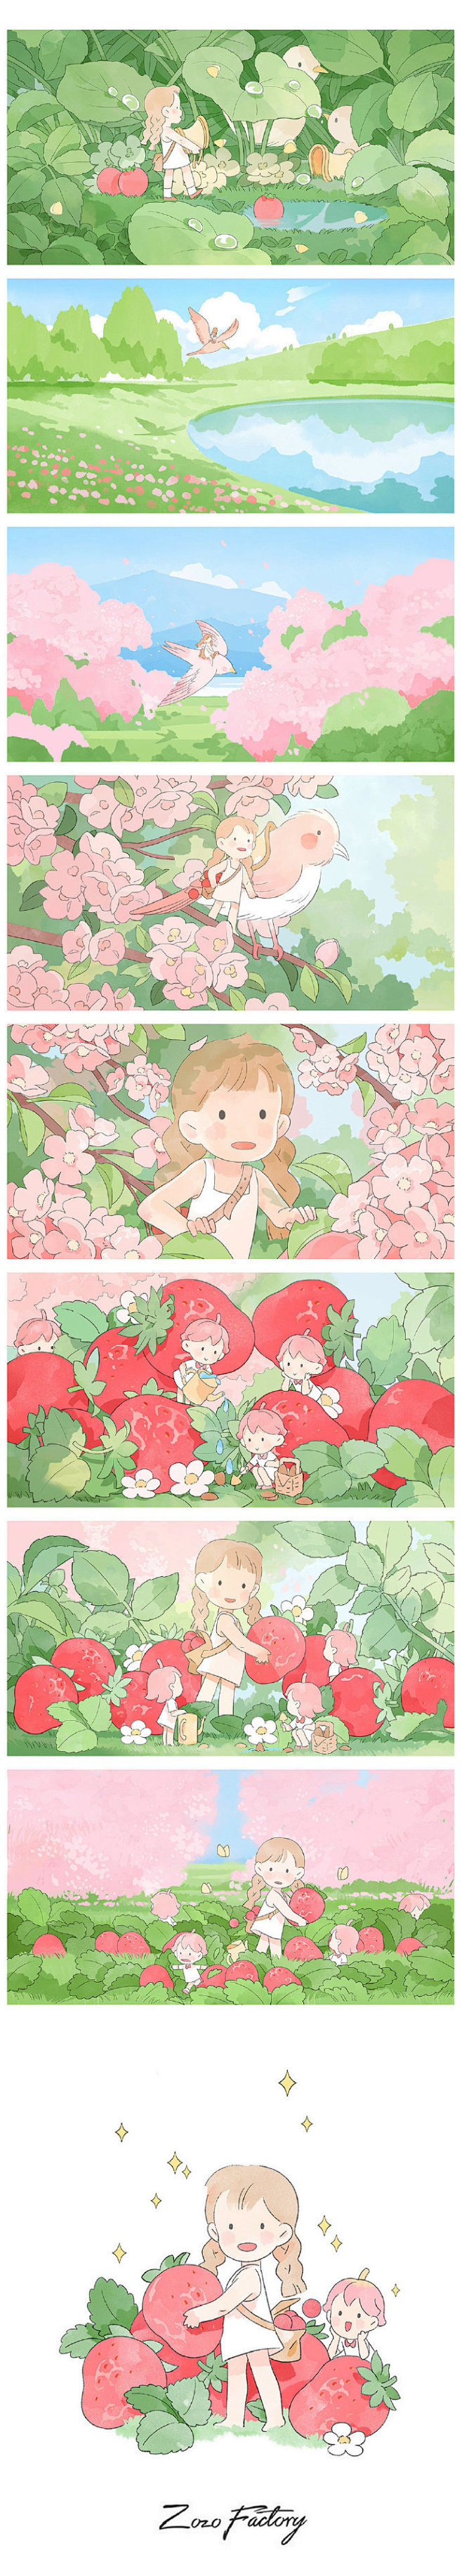           藏在花林间的草莓
 ...